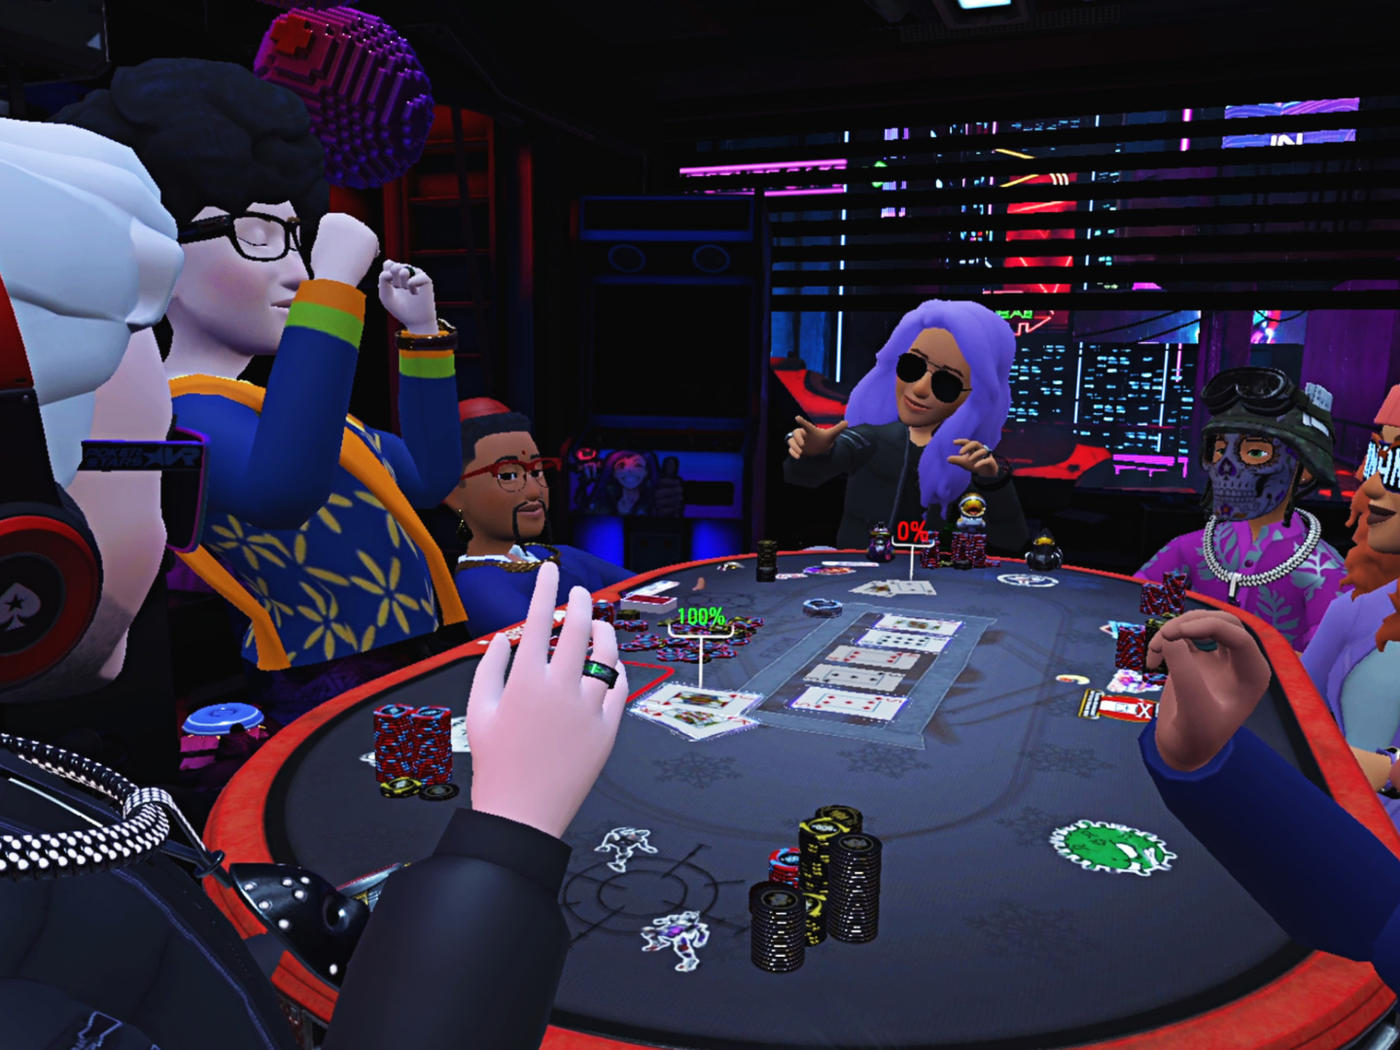 Casino Virtual Emocionante